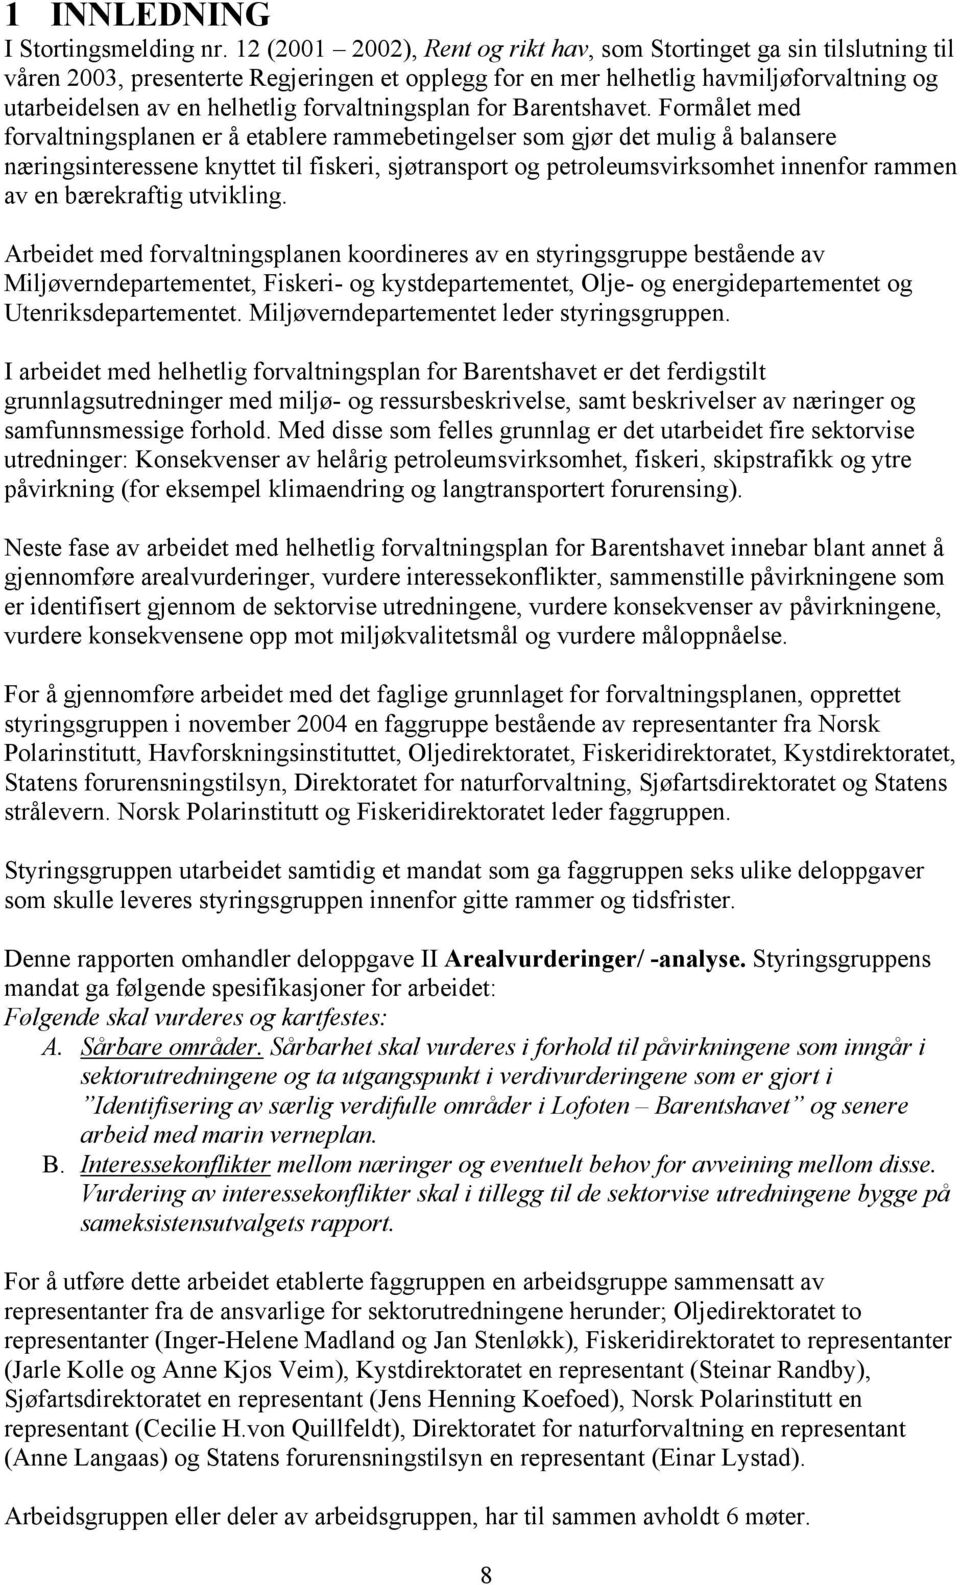 forvaltningsplan for Barentshavet.